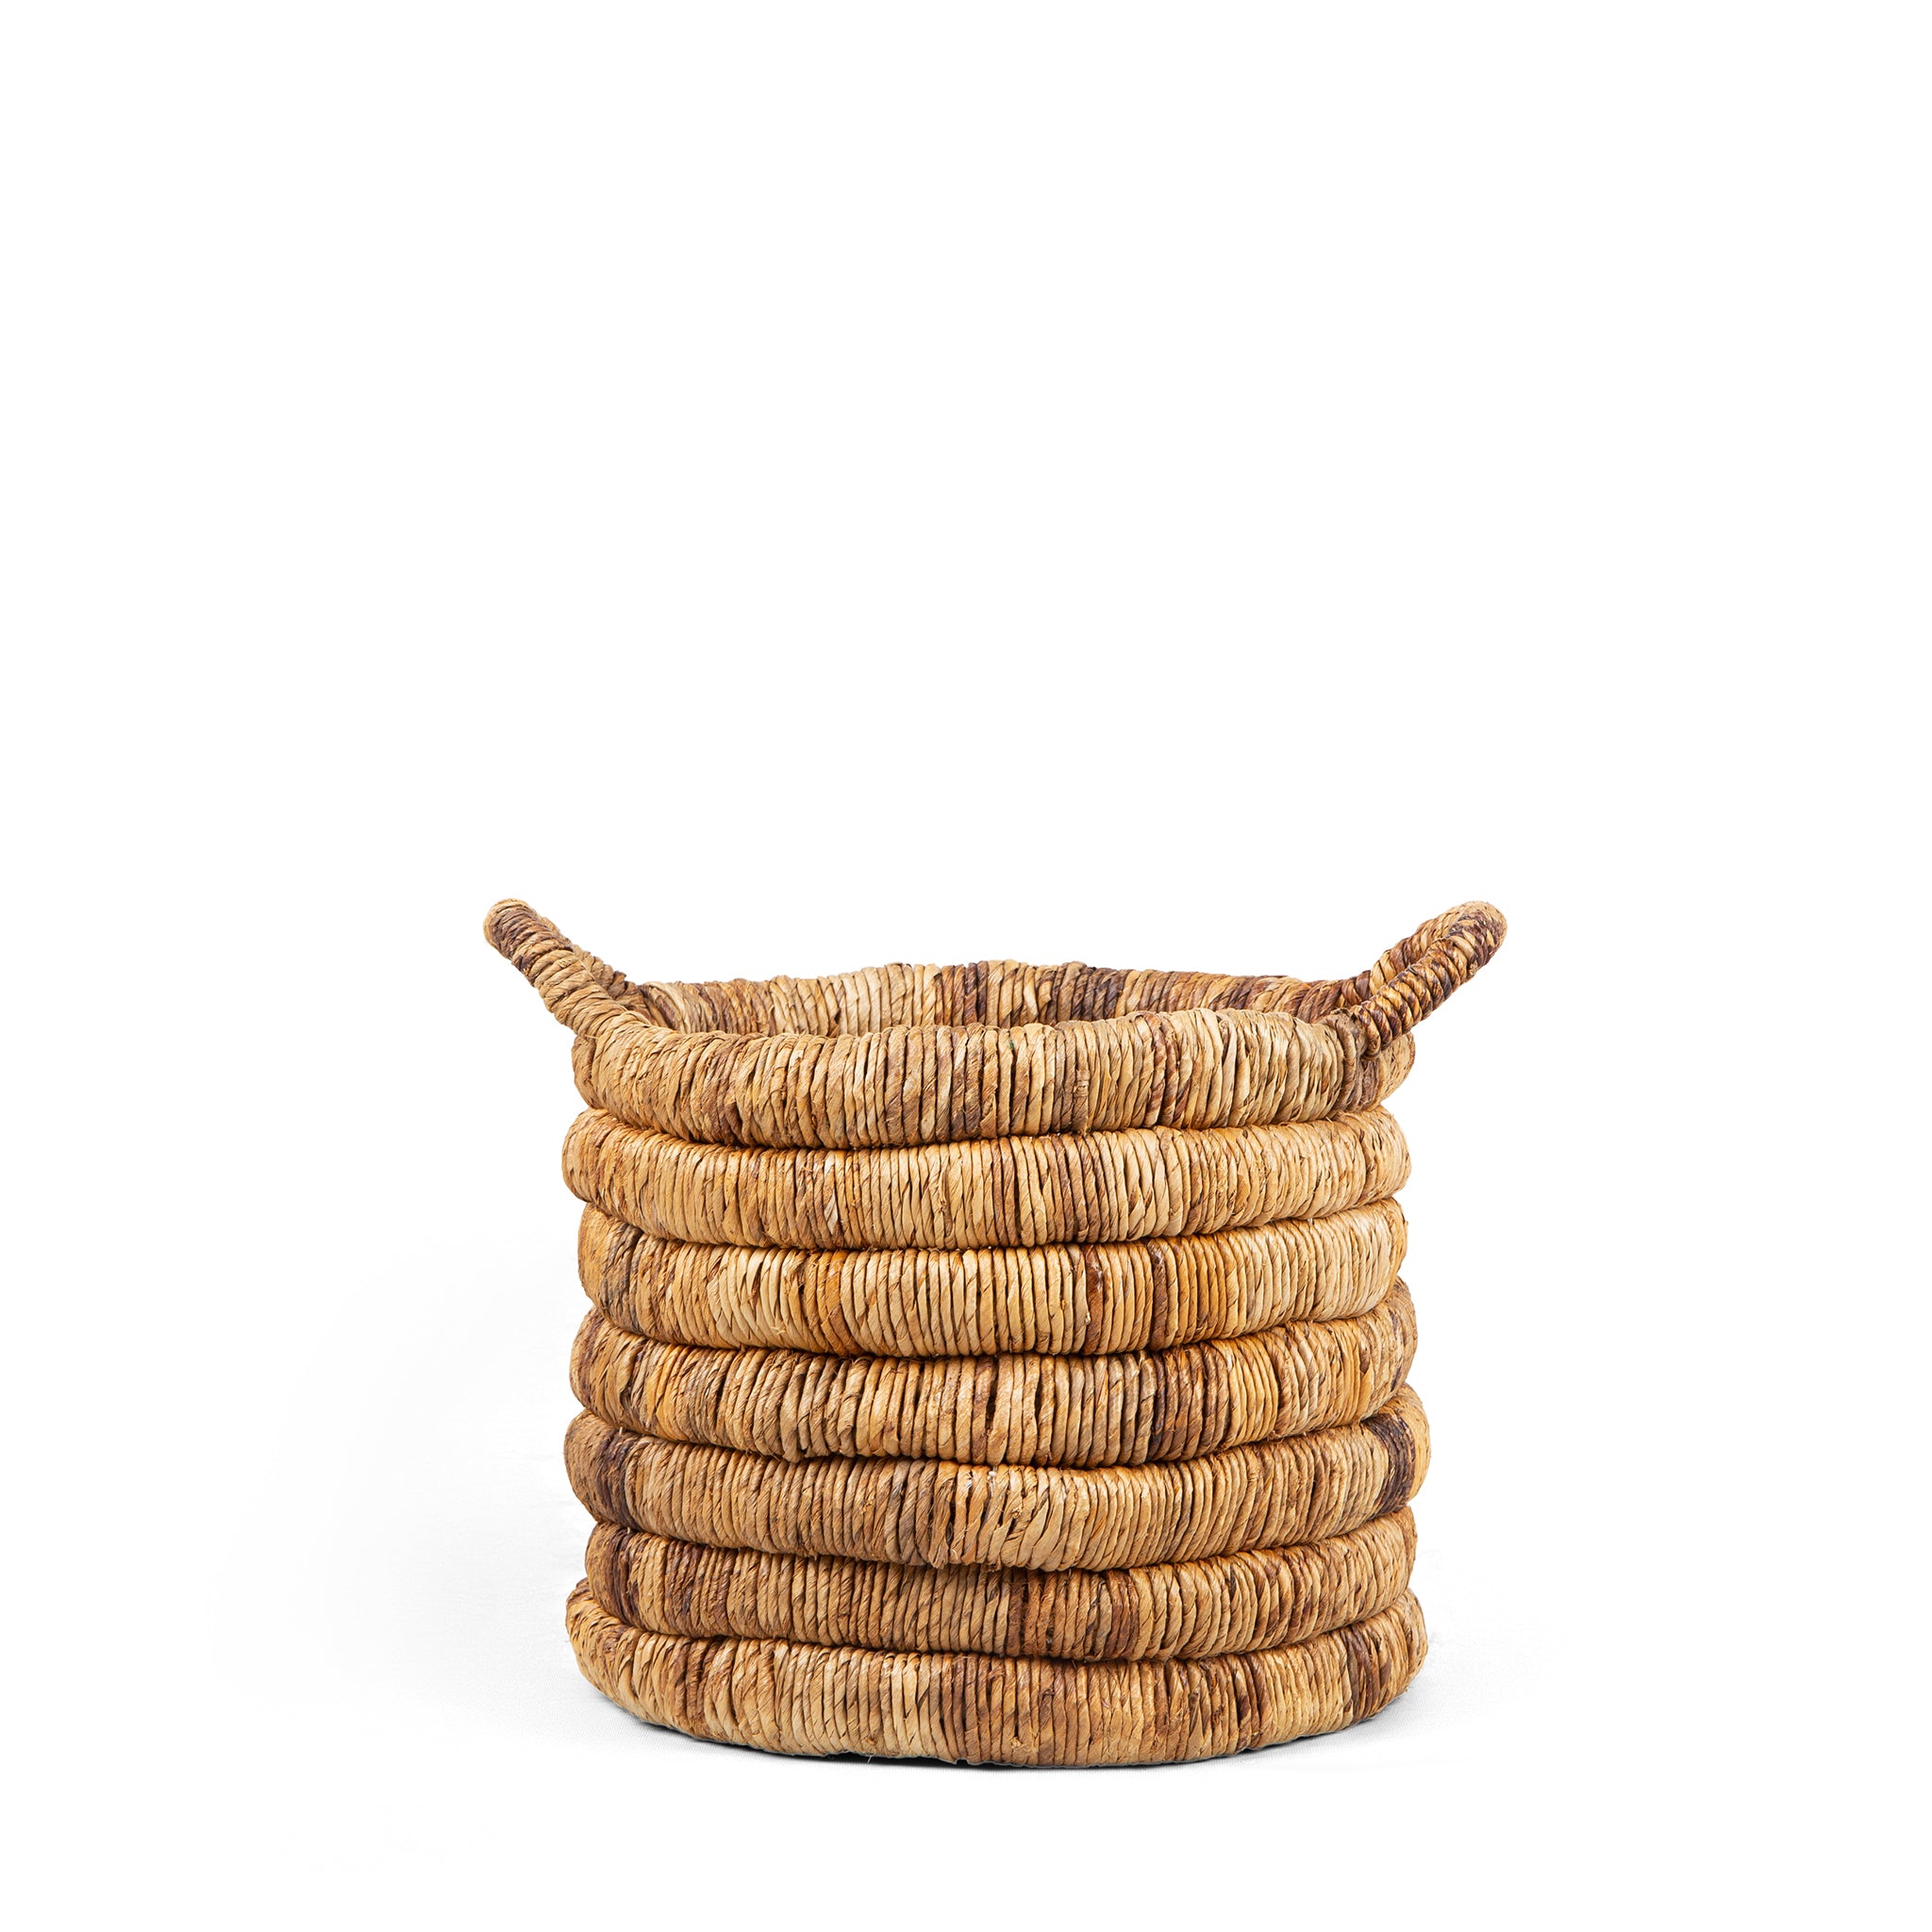 dbodhi caterpillar sago round basket two- tone - large baskets 